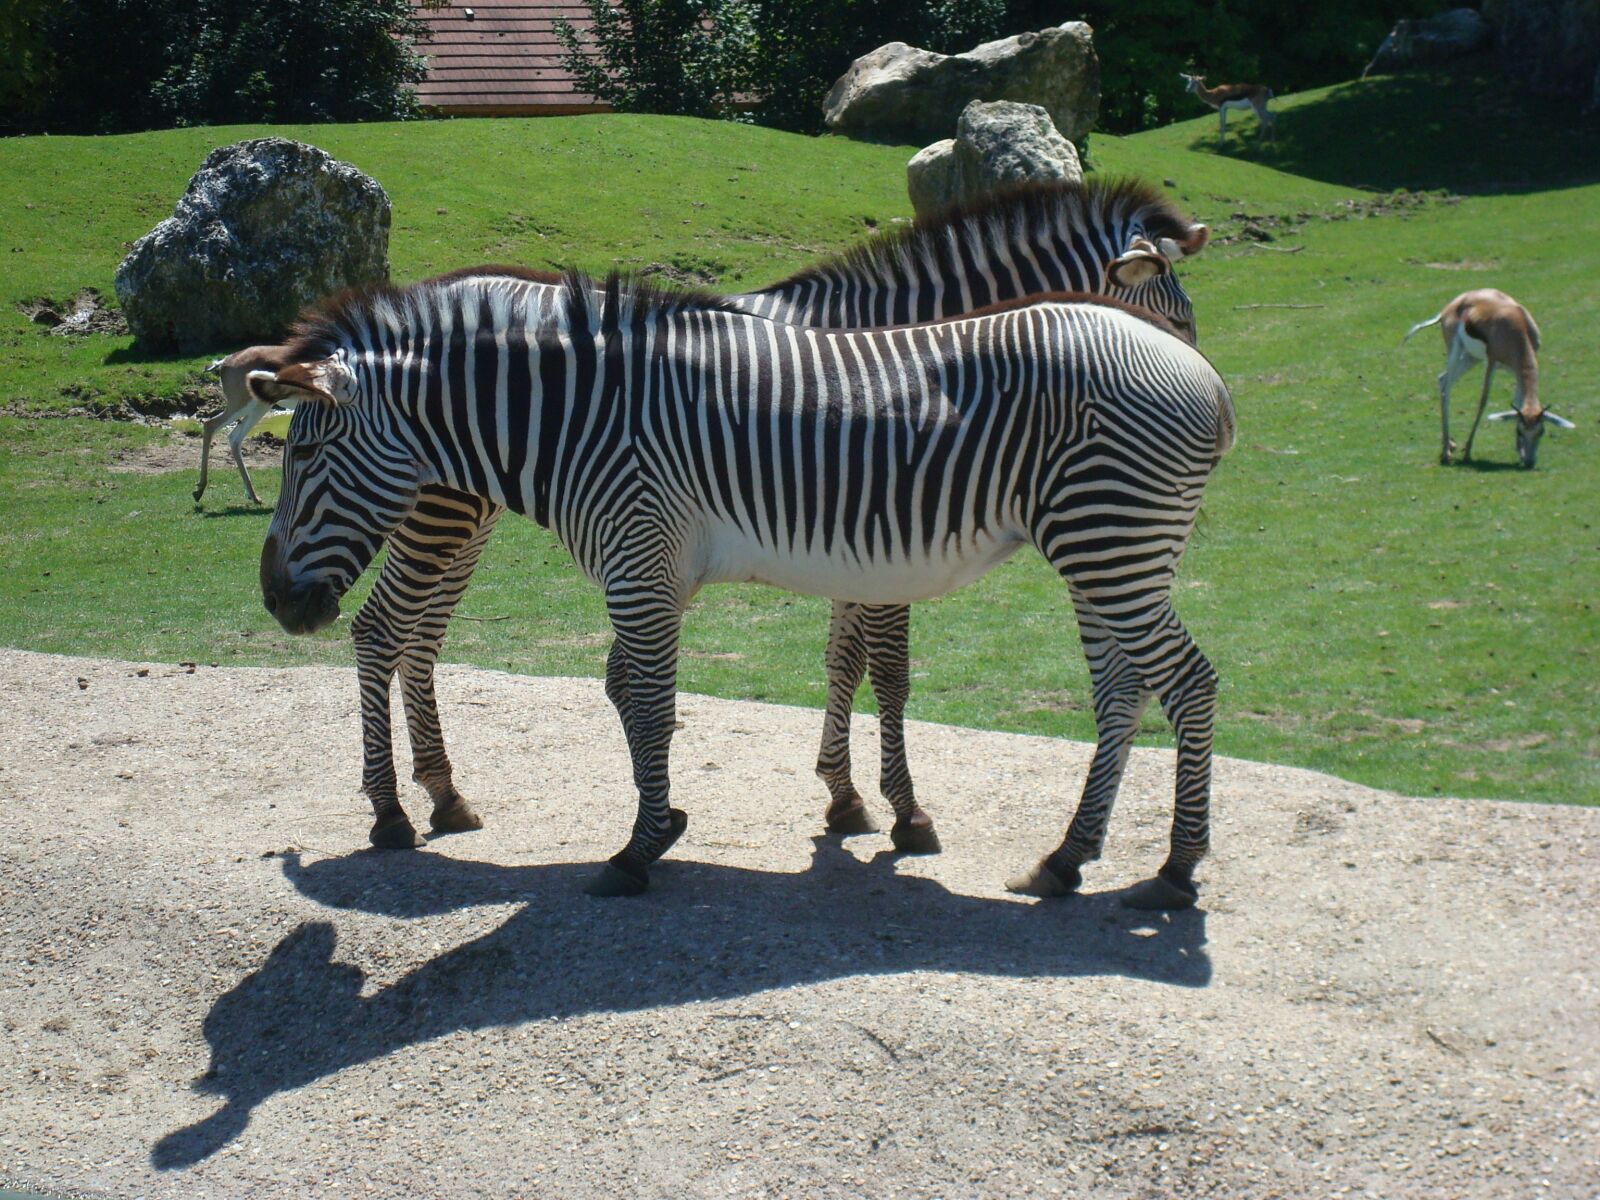 Sony DSC-W85 sample photo. "Zebra, animal, zoo" photography